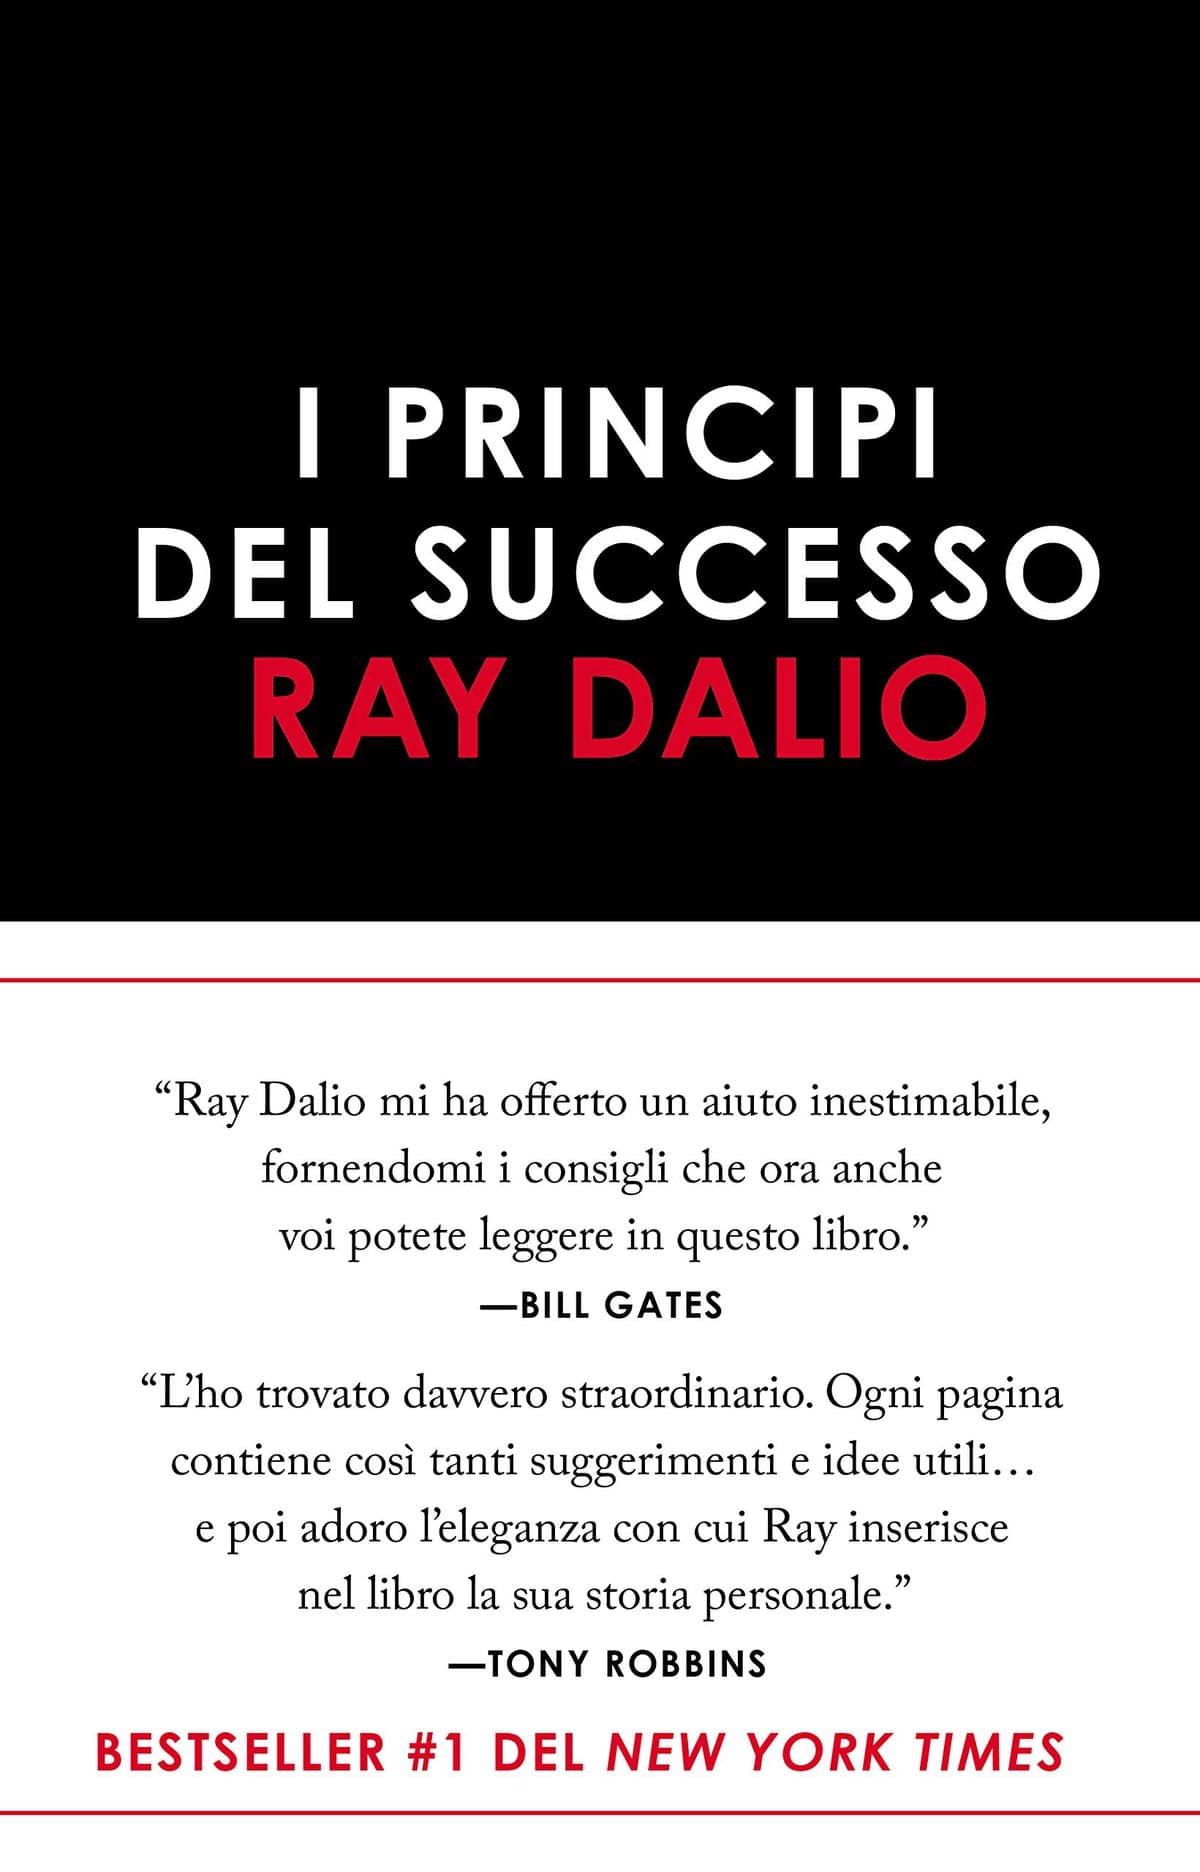 ay Dalio i Principi del Successo